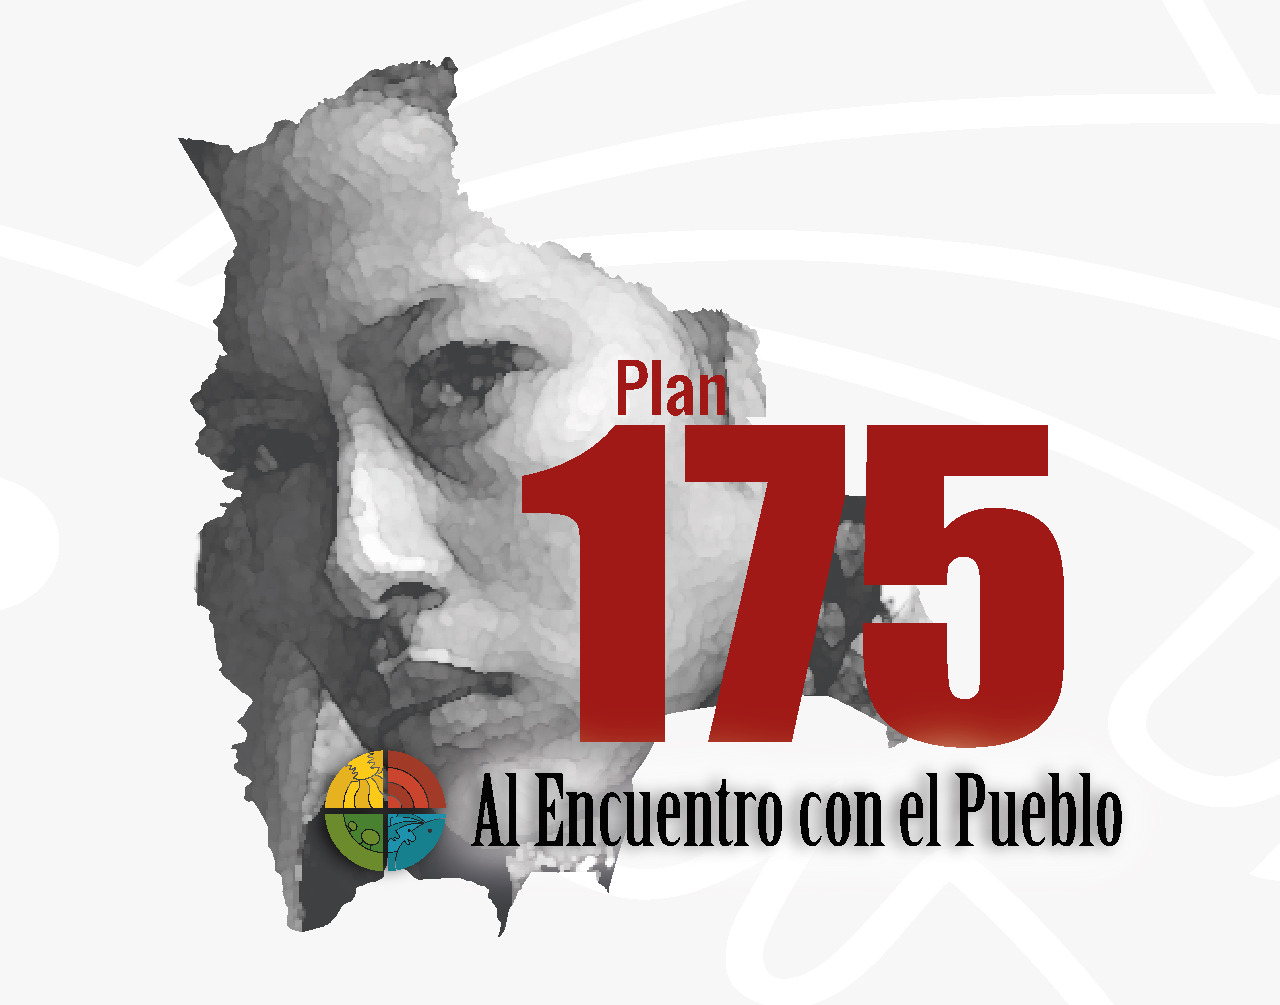 PLAN 175: DEFENSORÍA DEL PUEBLO OBSERVA QUE SÓLO 8% DE 110 MUNICIPIOS EJECUTA PLANES SISTEMATICOS PARA LUCHAR CONTRA LA VIOLENCIA